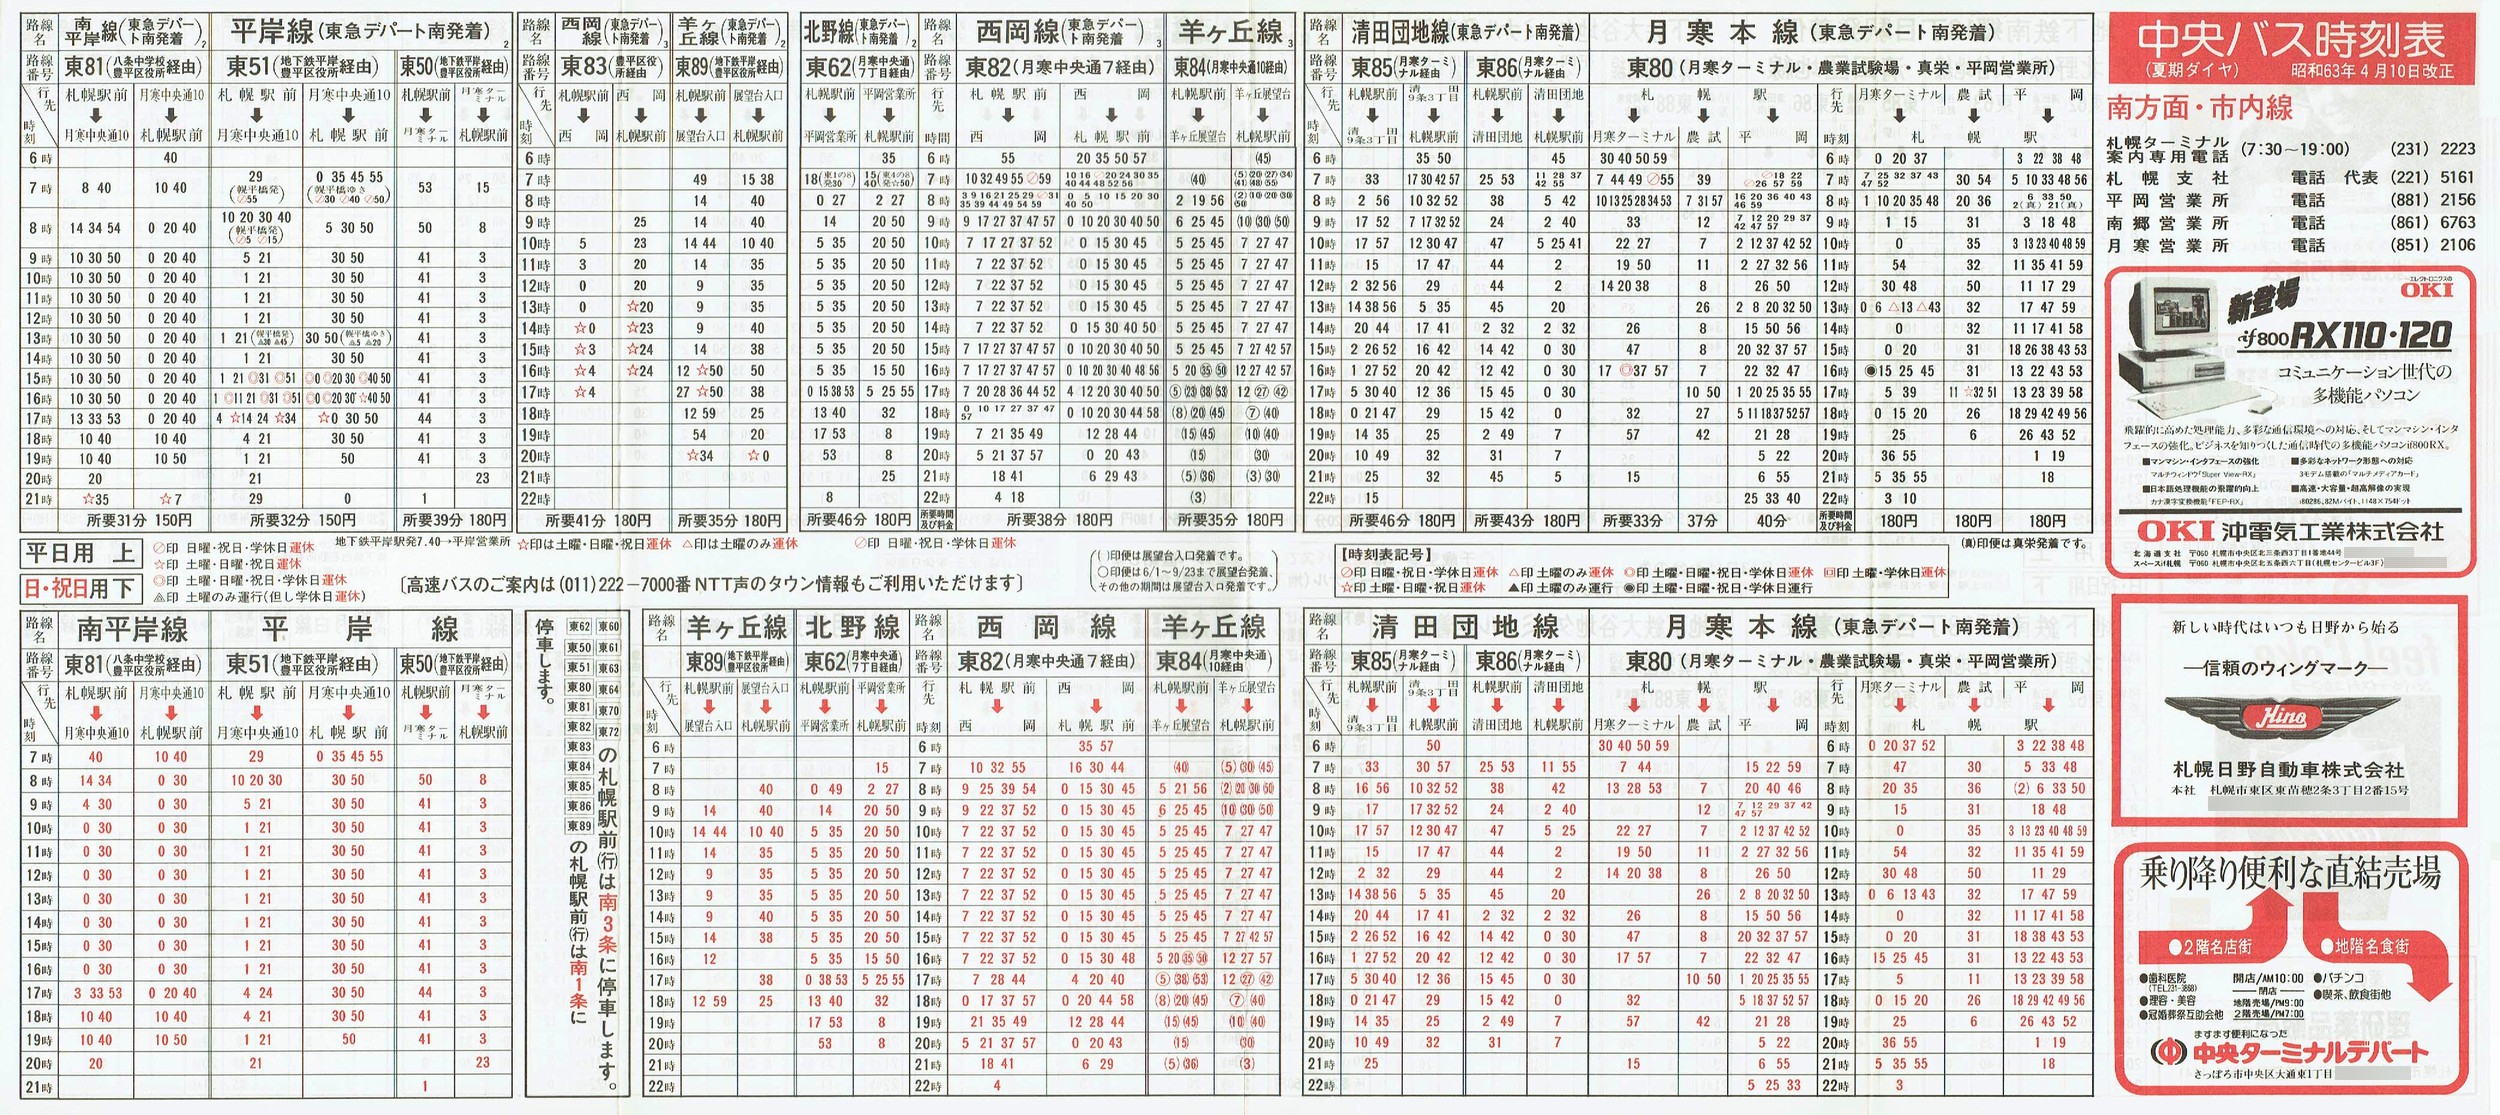 1988-04-10改正_北海道中央バス(札幌)_札幌市内線南方面時刻表表面